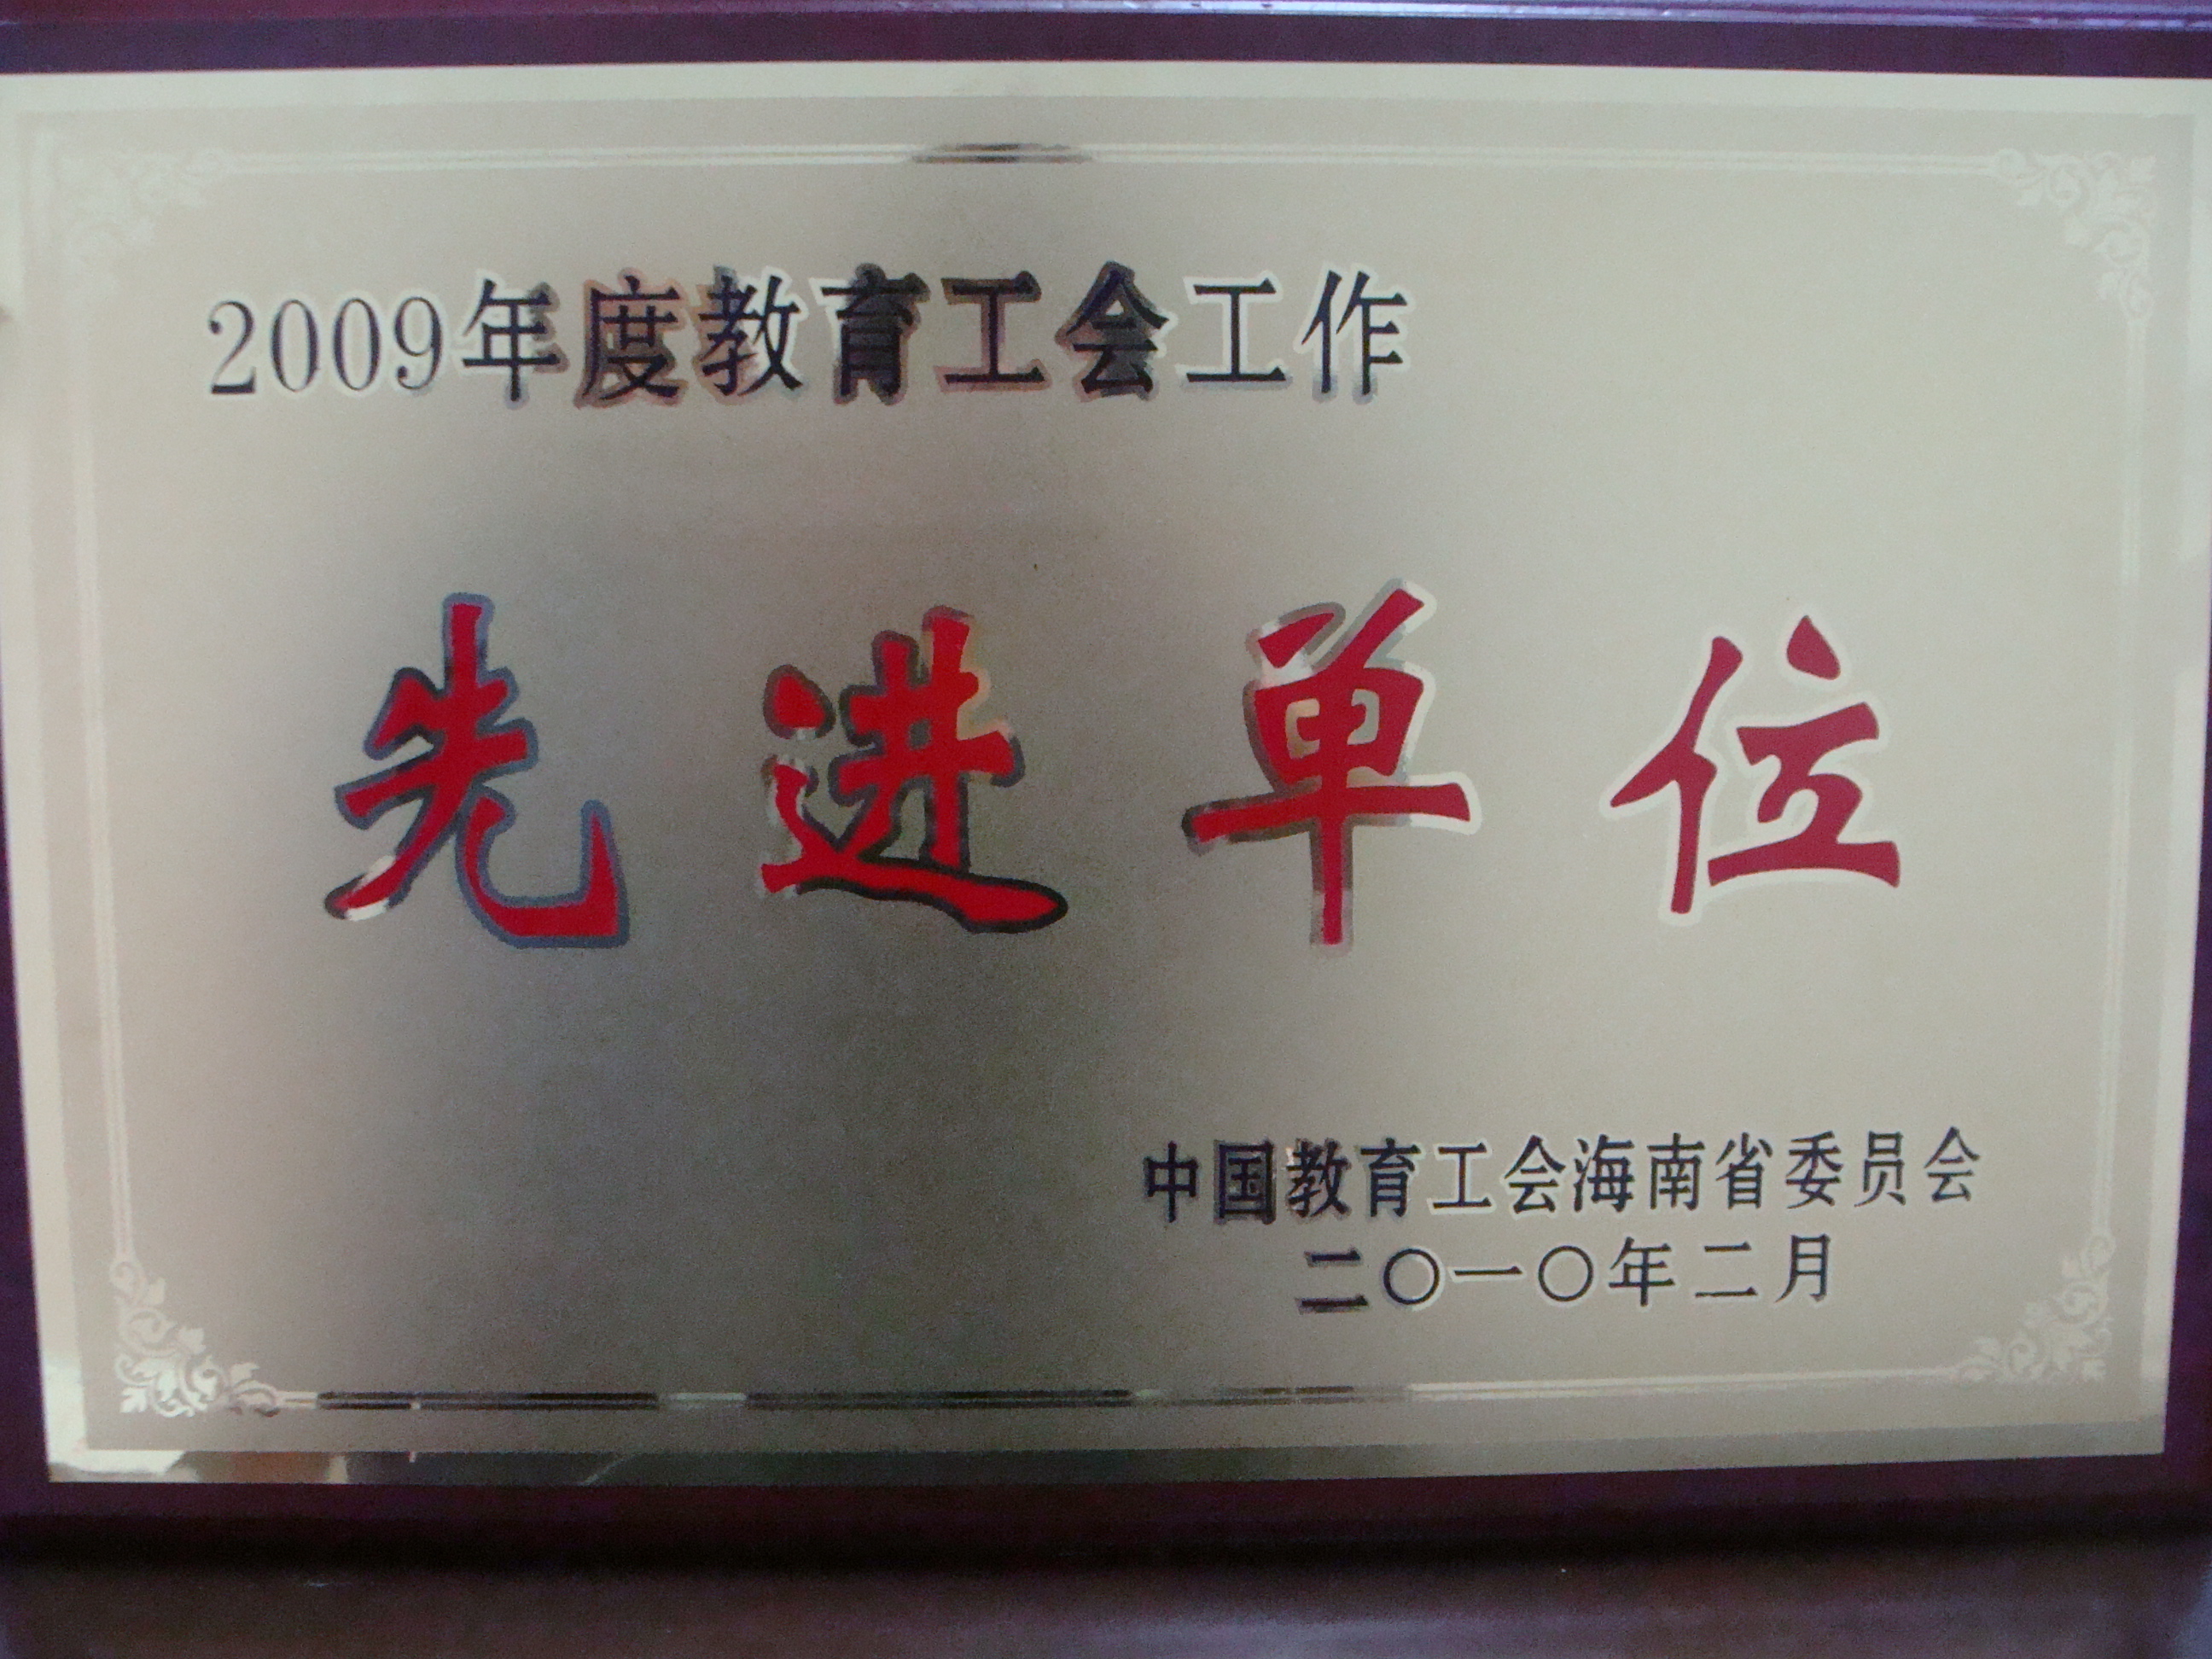 我院被评为2009年度海南省教育工会工作先进单位